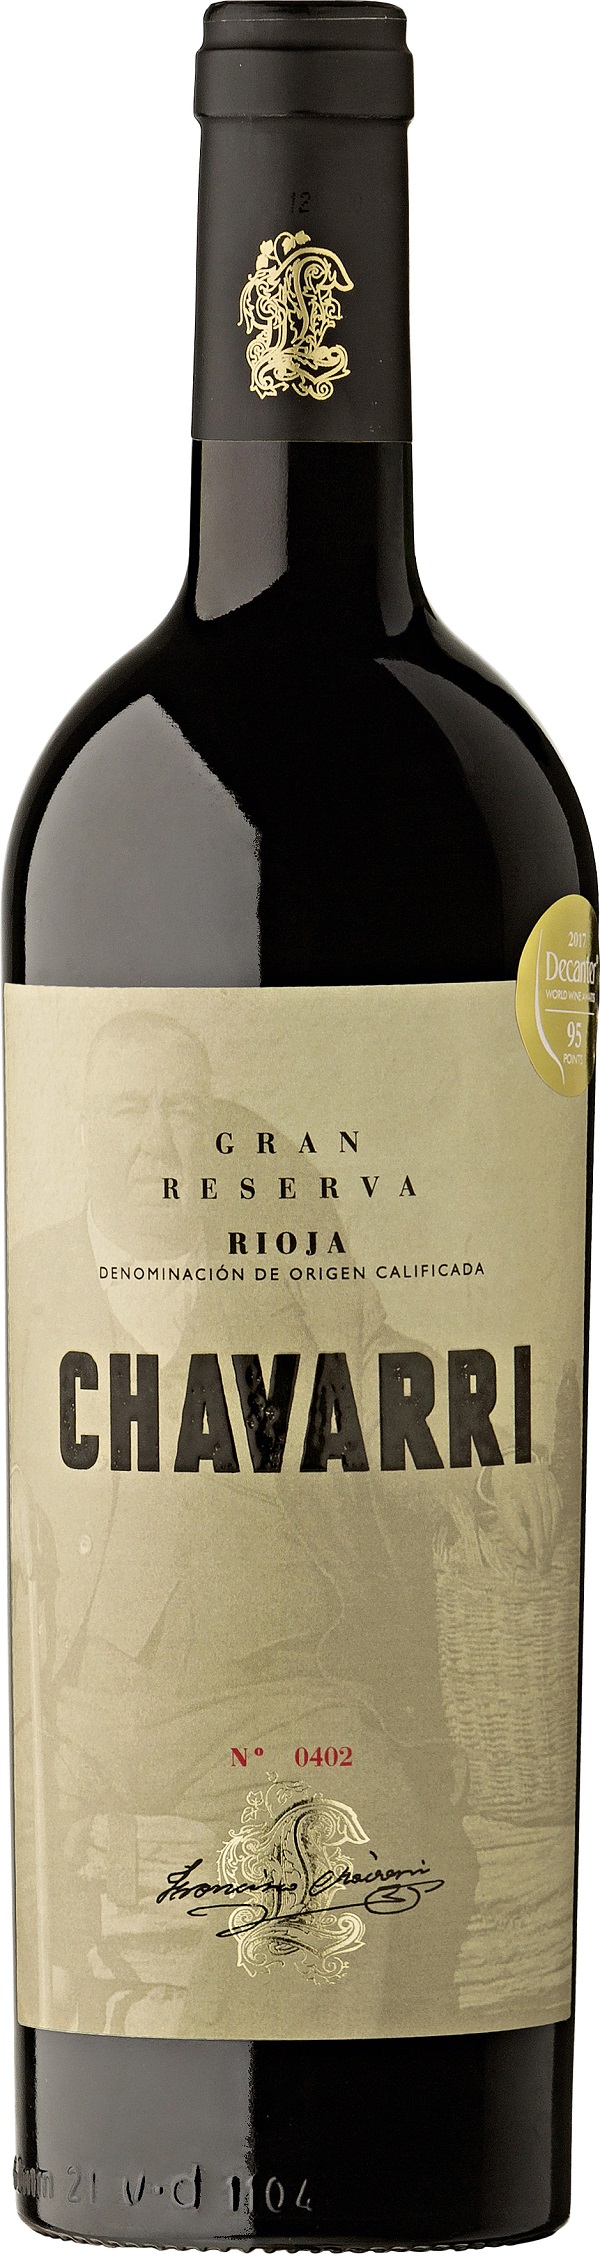 Larchago Chavarri Rioja Gran Reserva 2000 0.75 l Rotwein